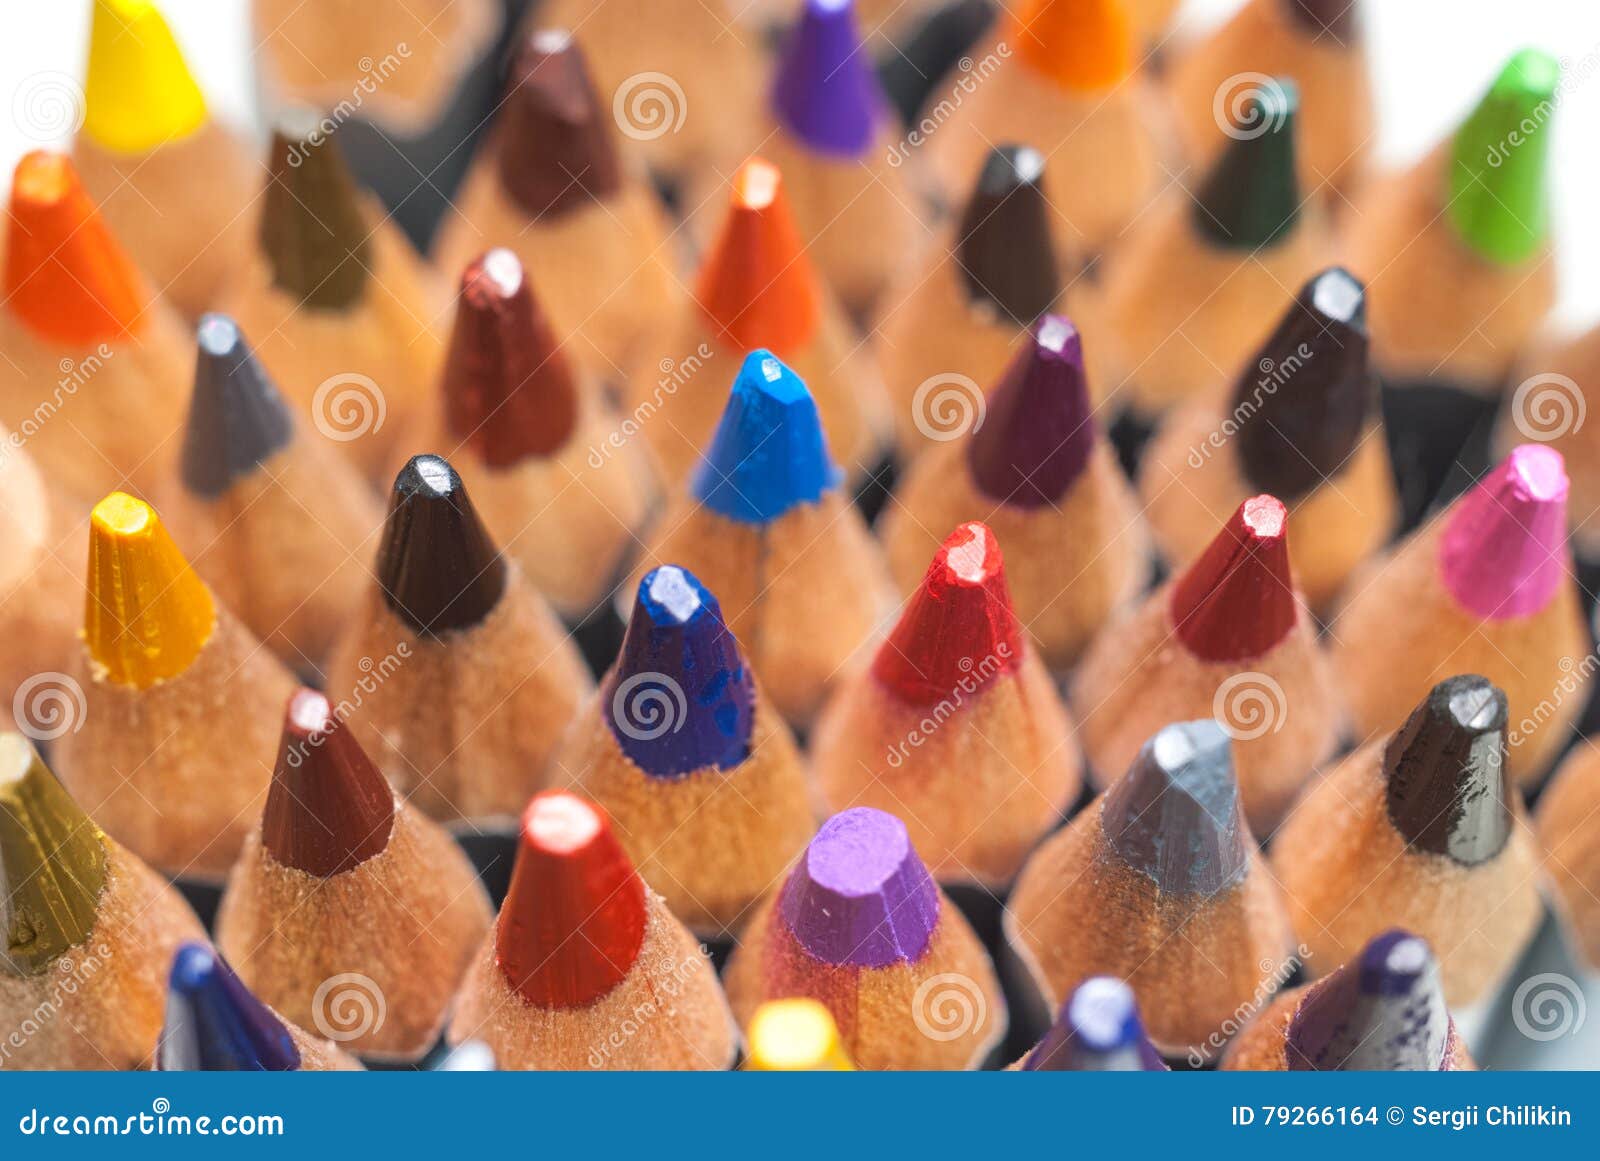 Matite colorate affilate Una pila di matite colorate Ready per verniciare Colorato selezione